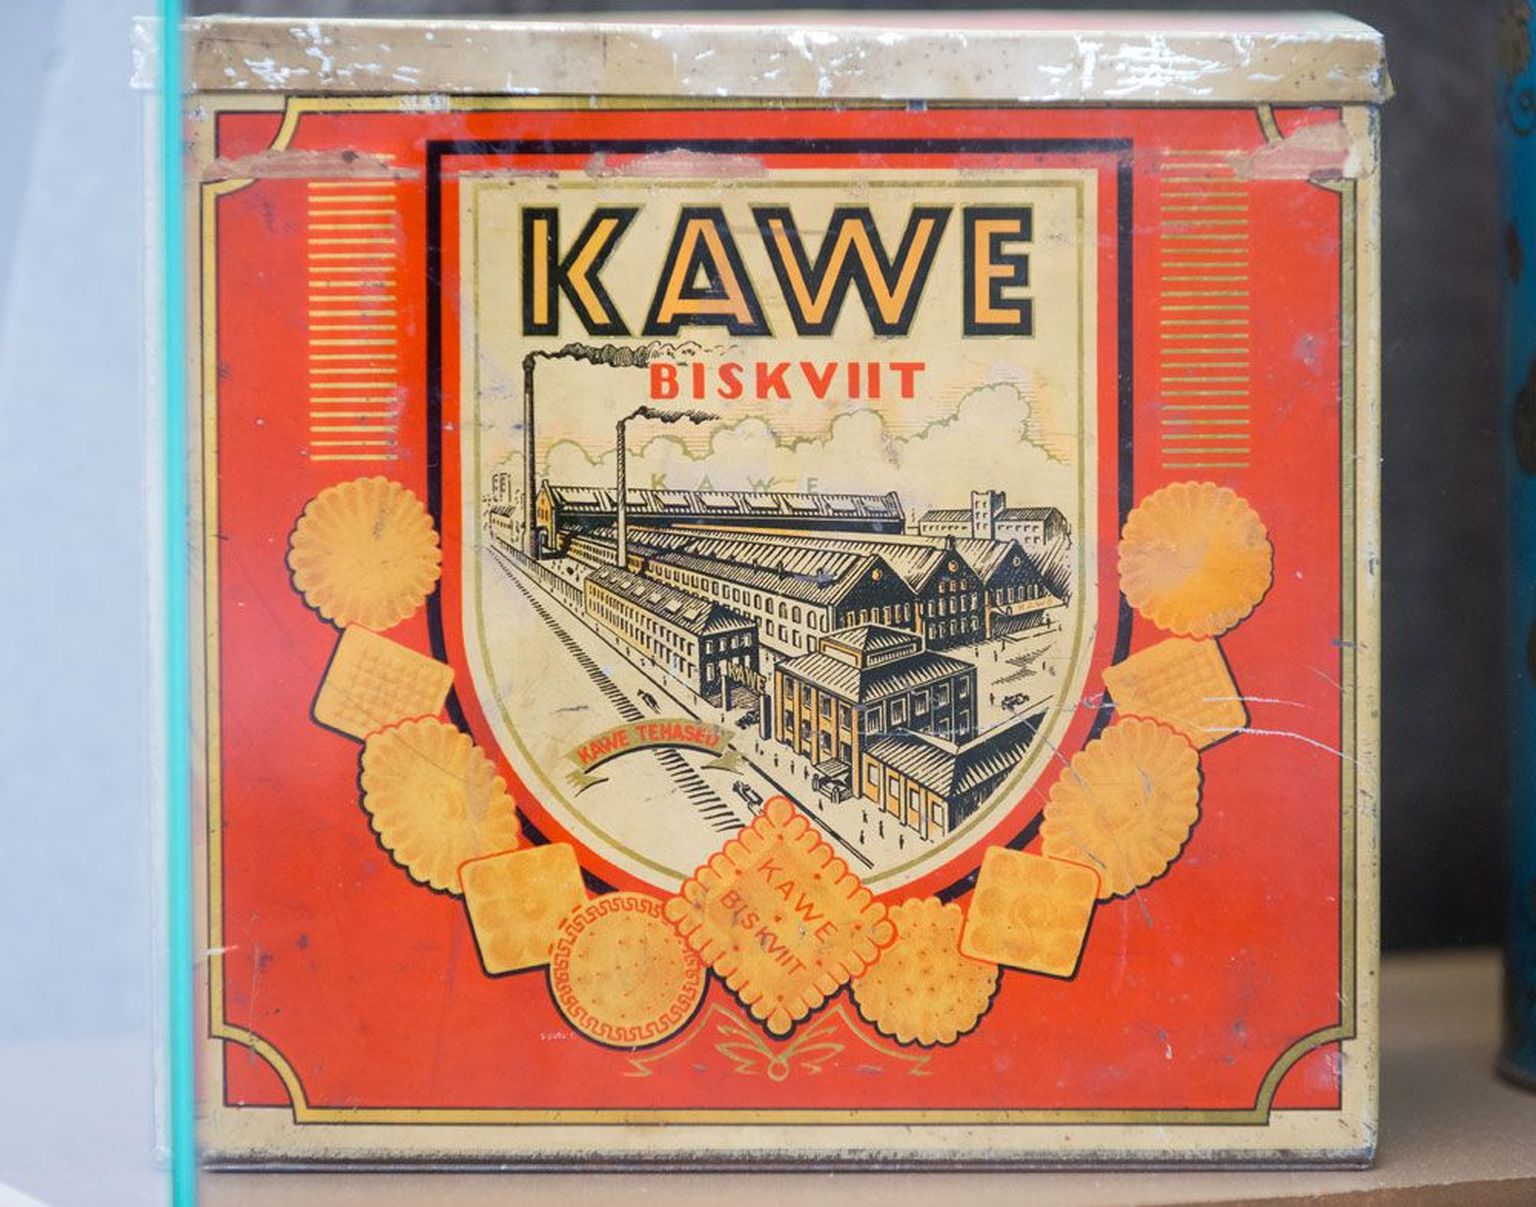 Magusavabrik Kawe arvas, et suur tehasehoone karbil tõestab, et tooted on maitsvad.